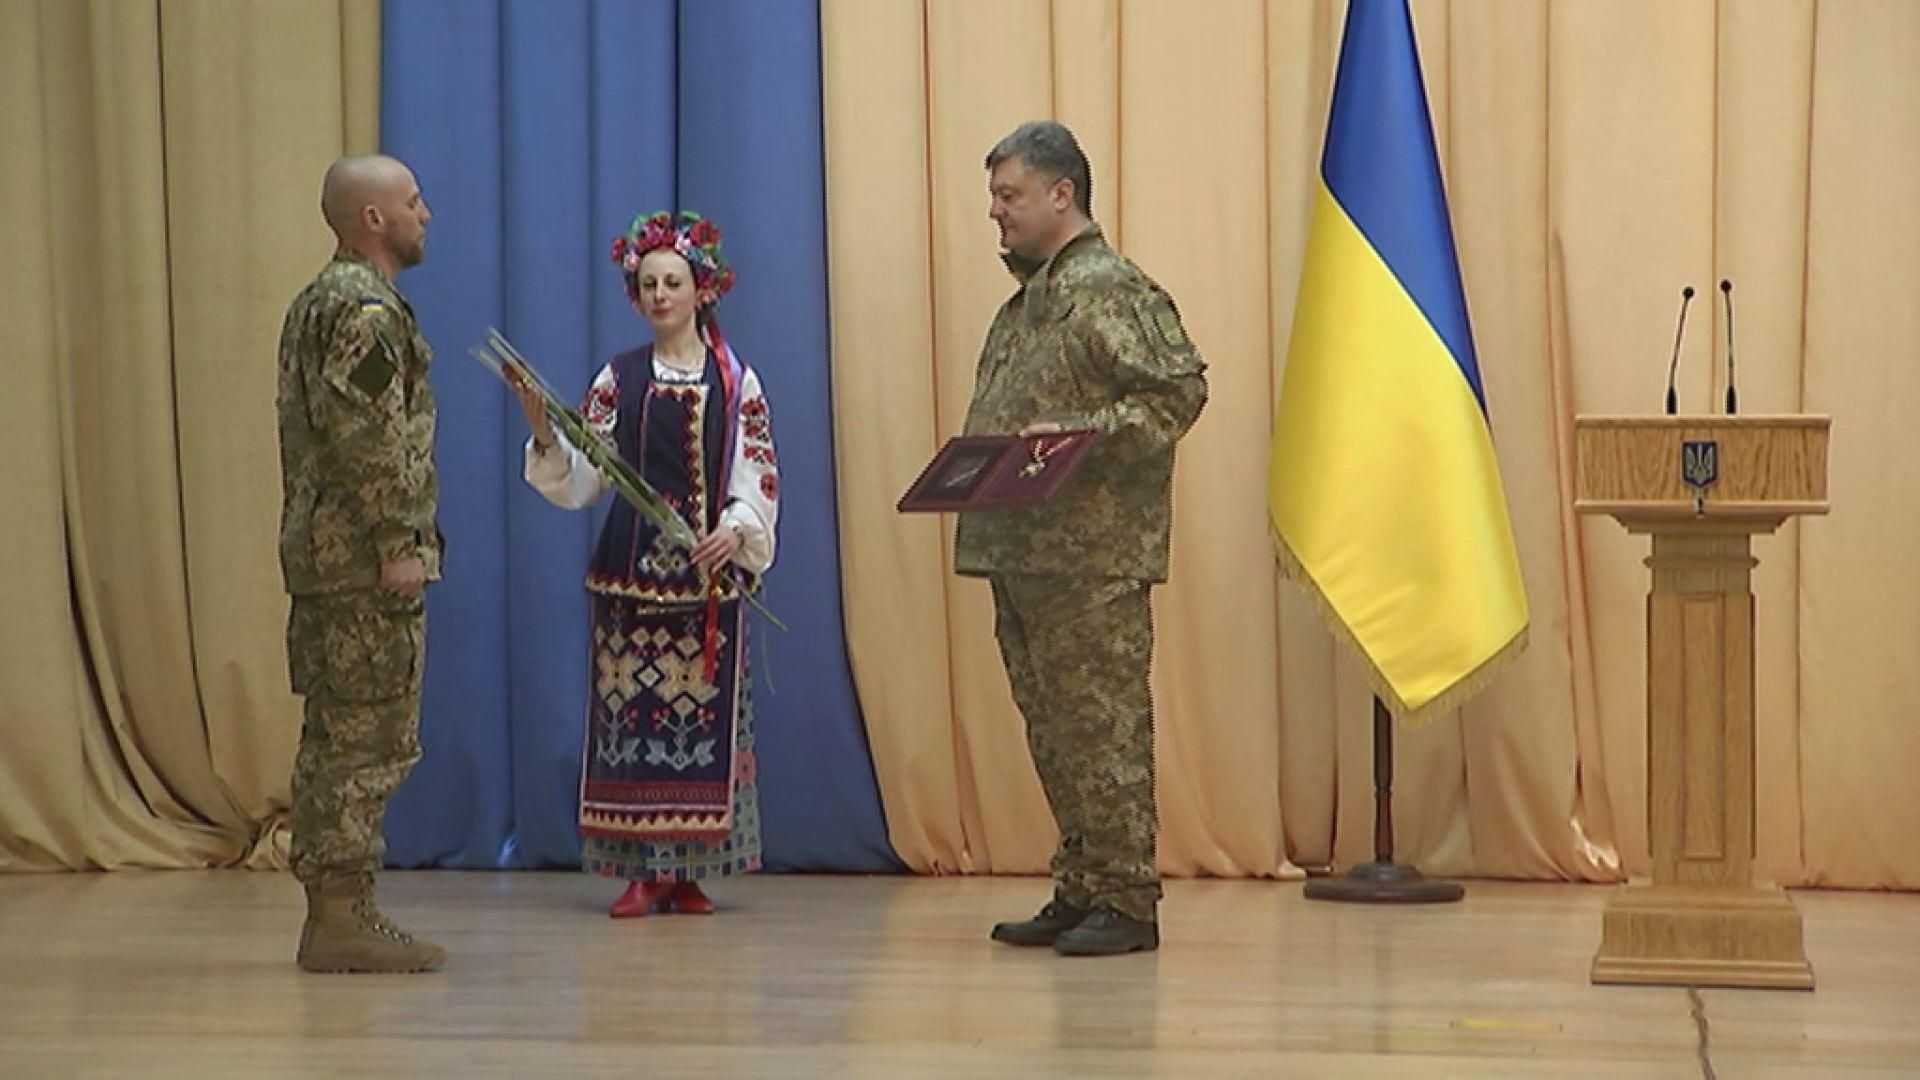 Впервые в истории Украины герой получил награду полного кавалера ордена Хмельницкого